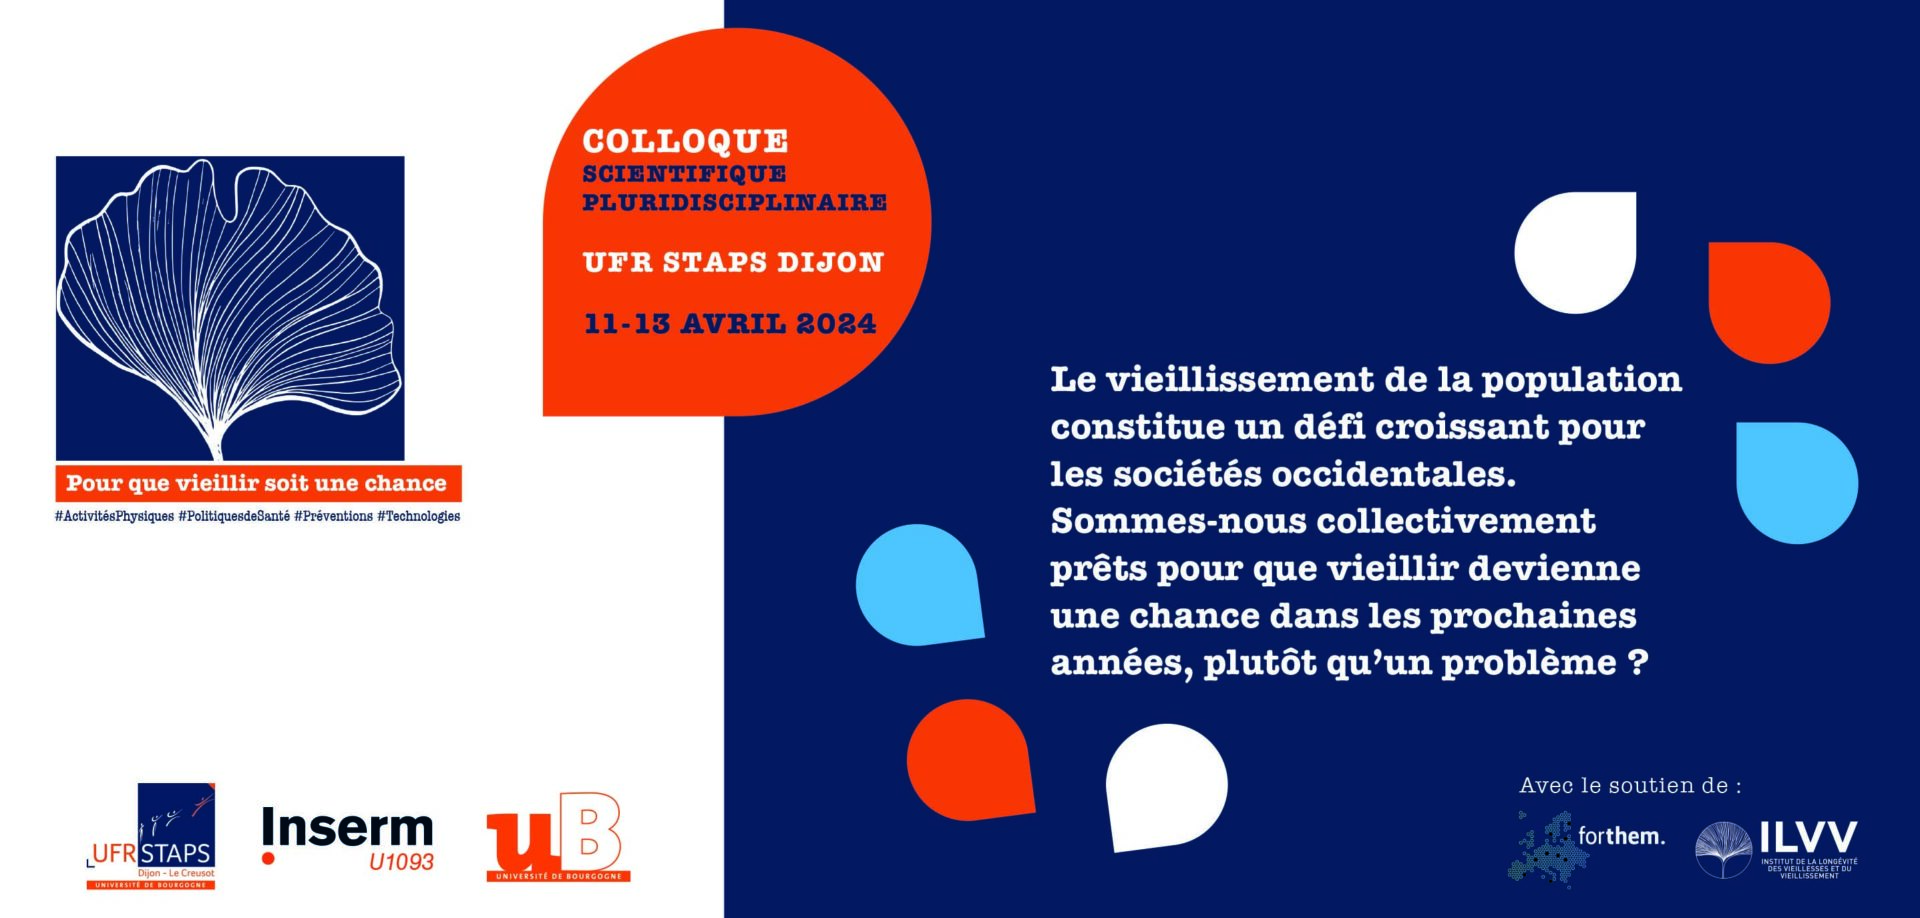 Colloque “Pour que vieillir soit une chance” du 11 au 13 Avril 2024 UFR STAPS Dijon